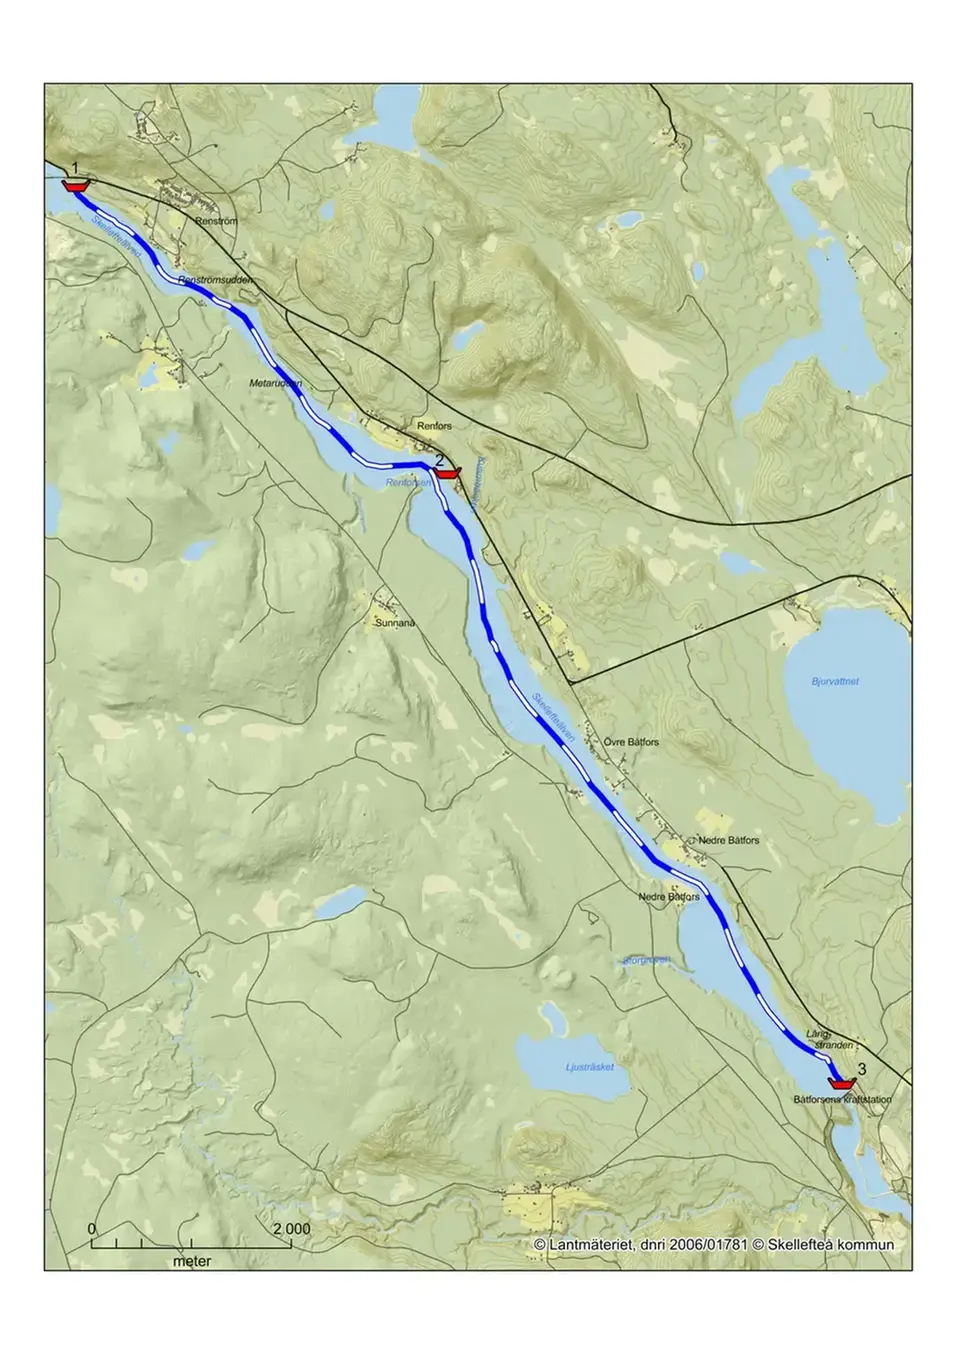 Visar kanotsträckan för Renström till Båtforsens kraftstation